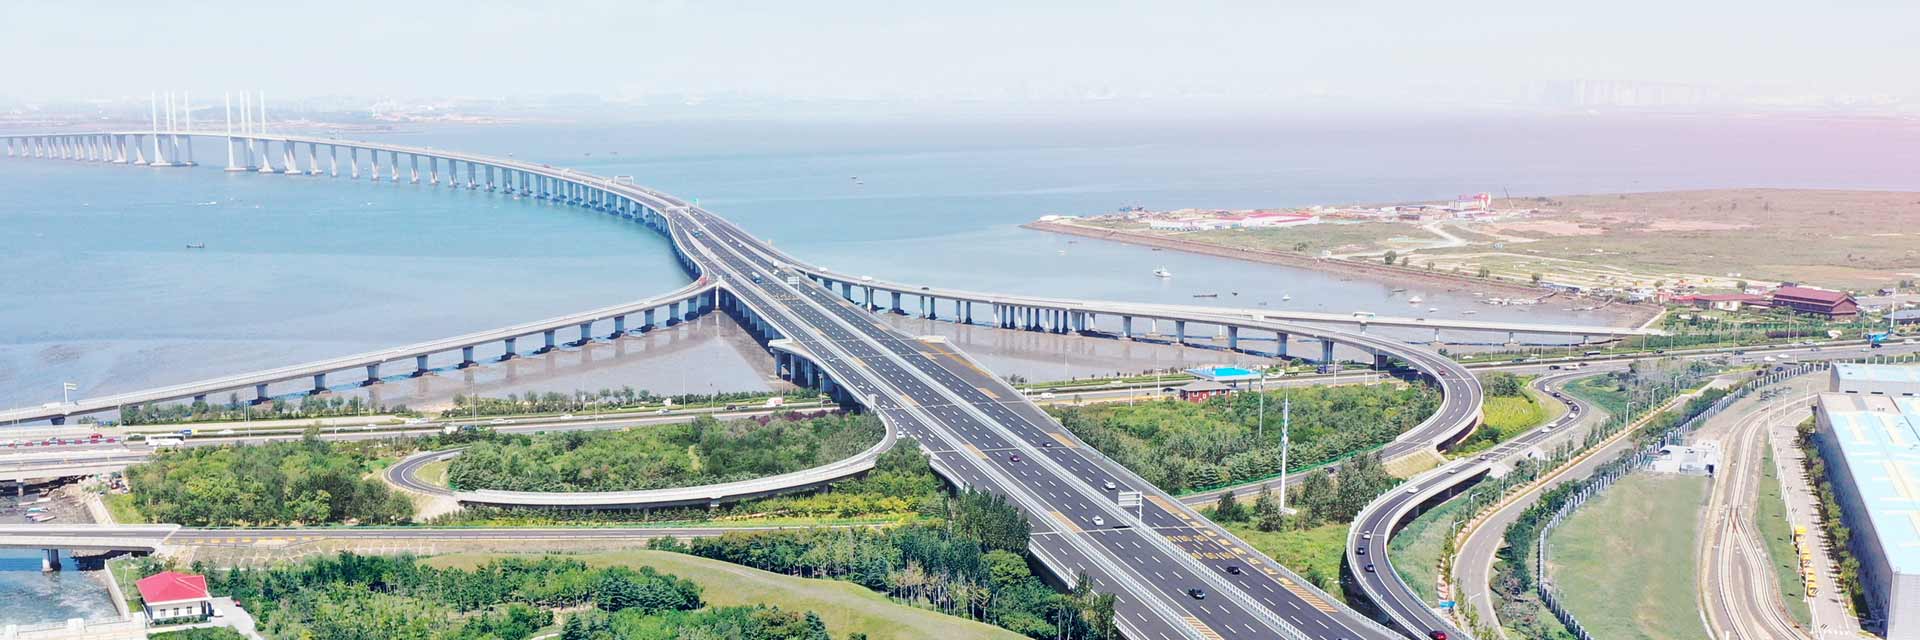 胶州湾大桥青岛端接线工程